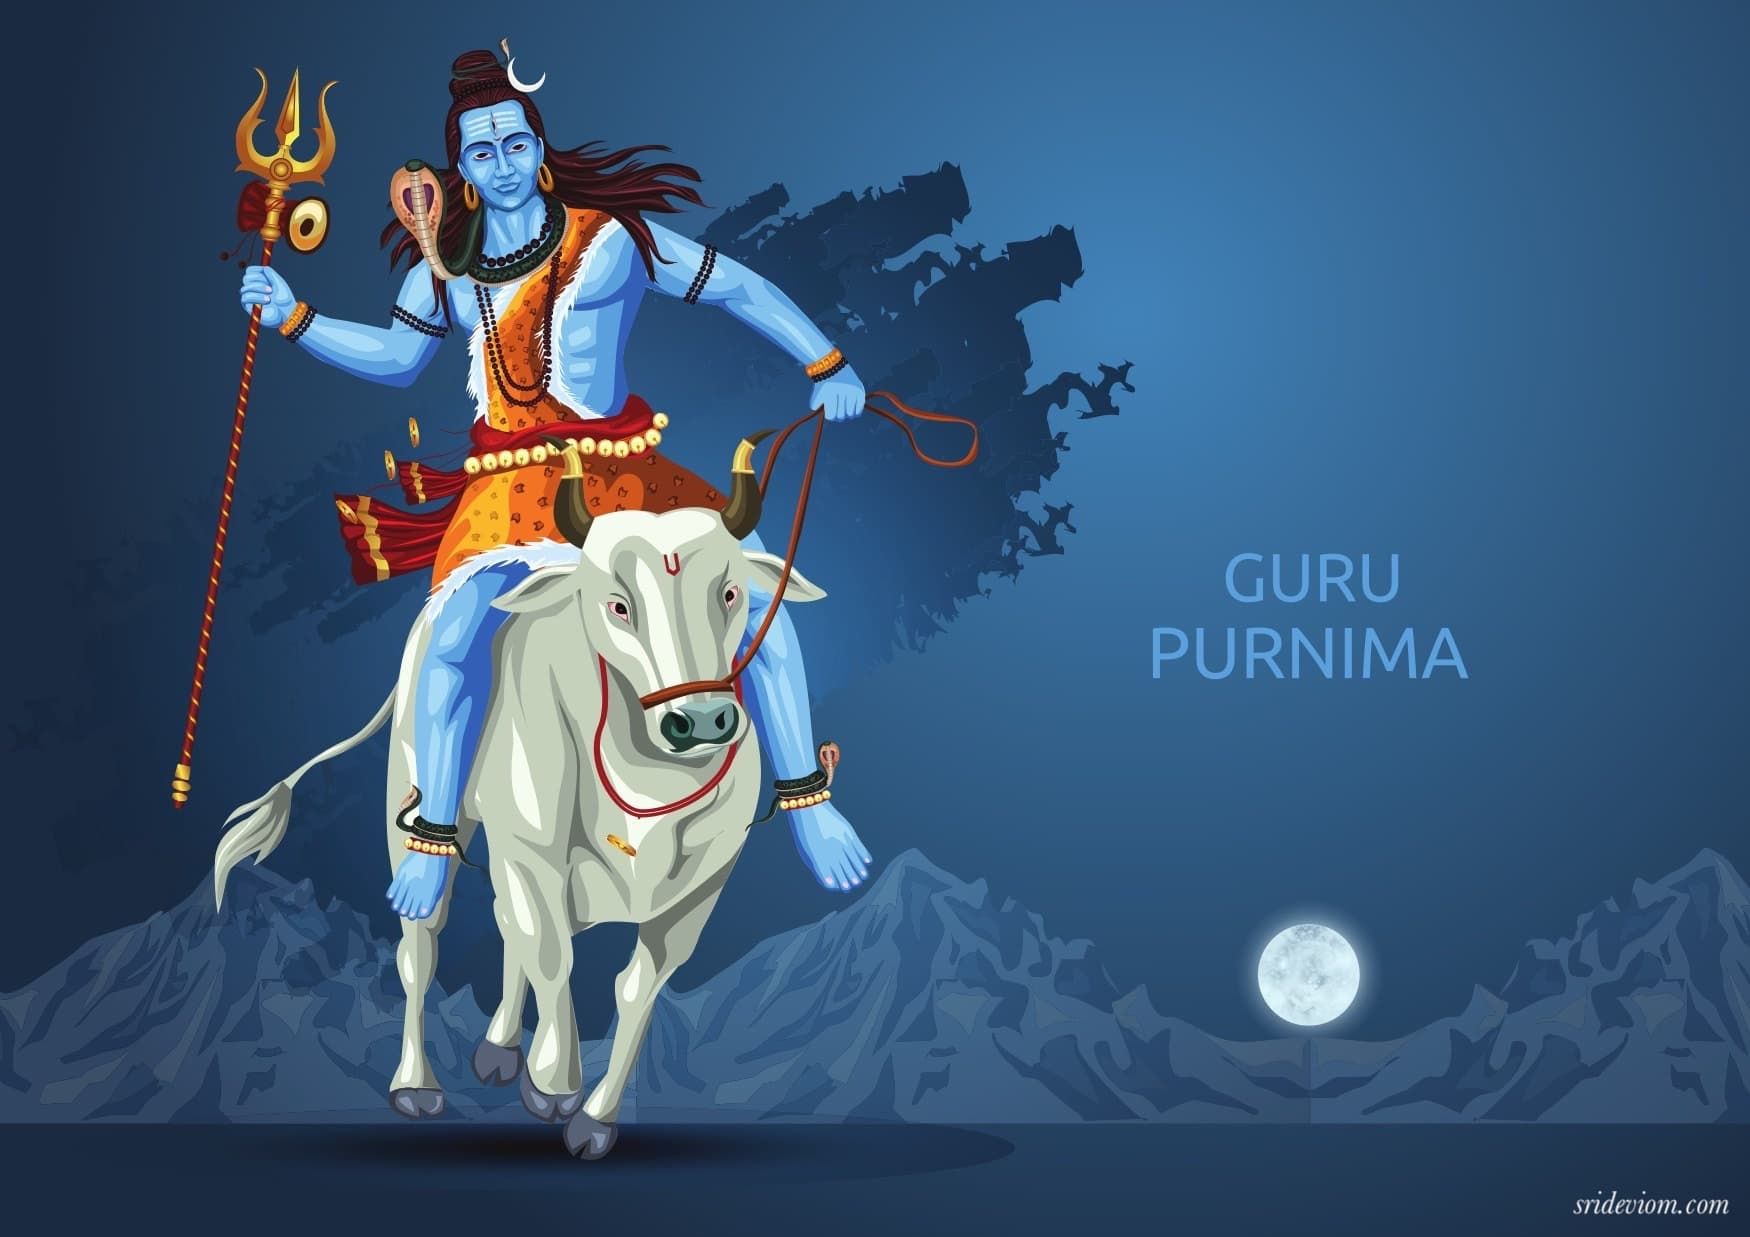 Guru purnima and the eka vratya 1